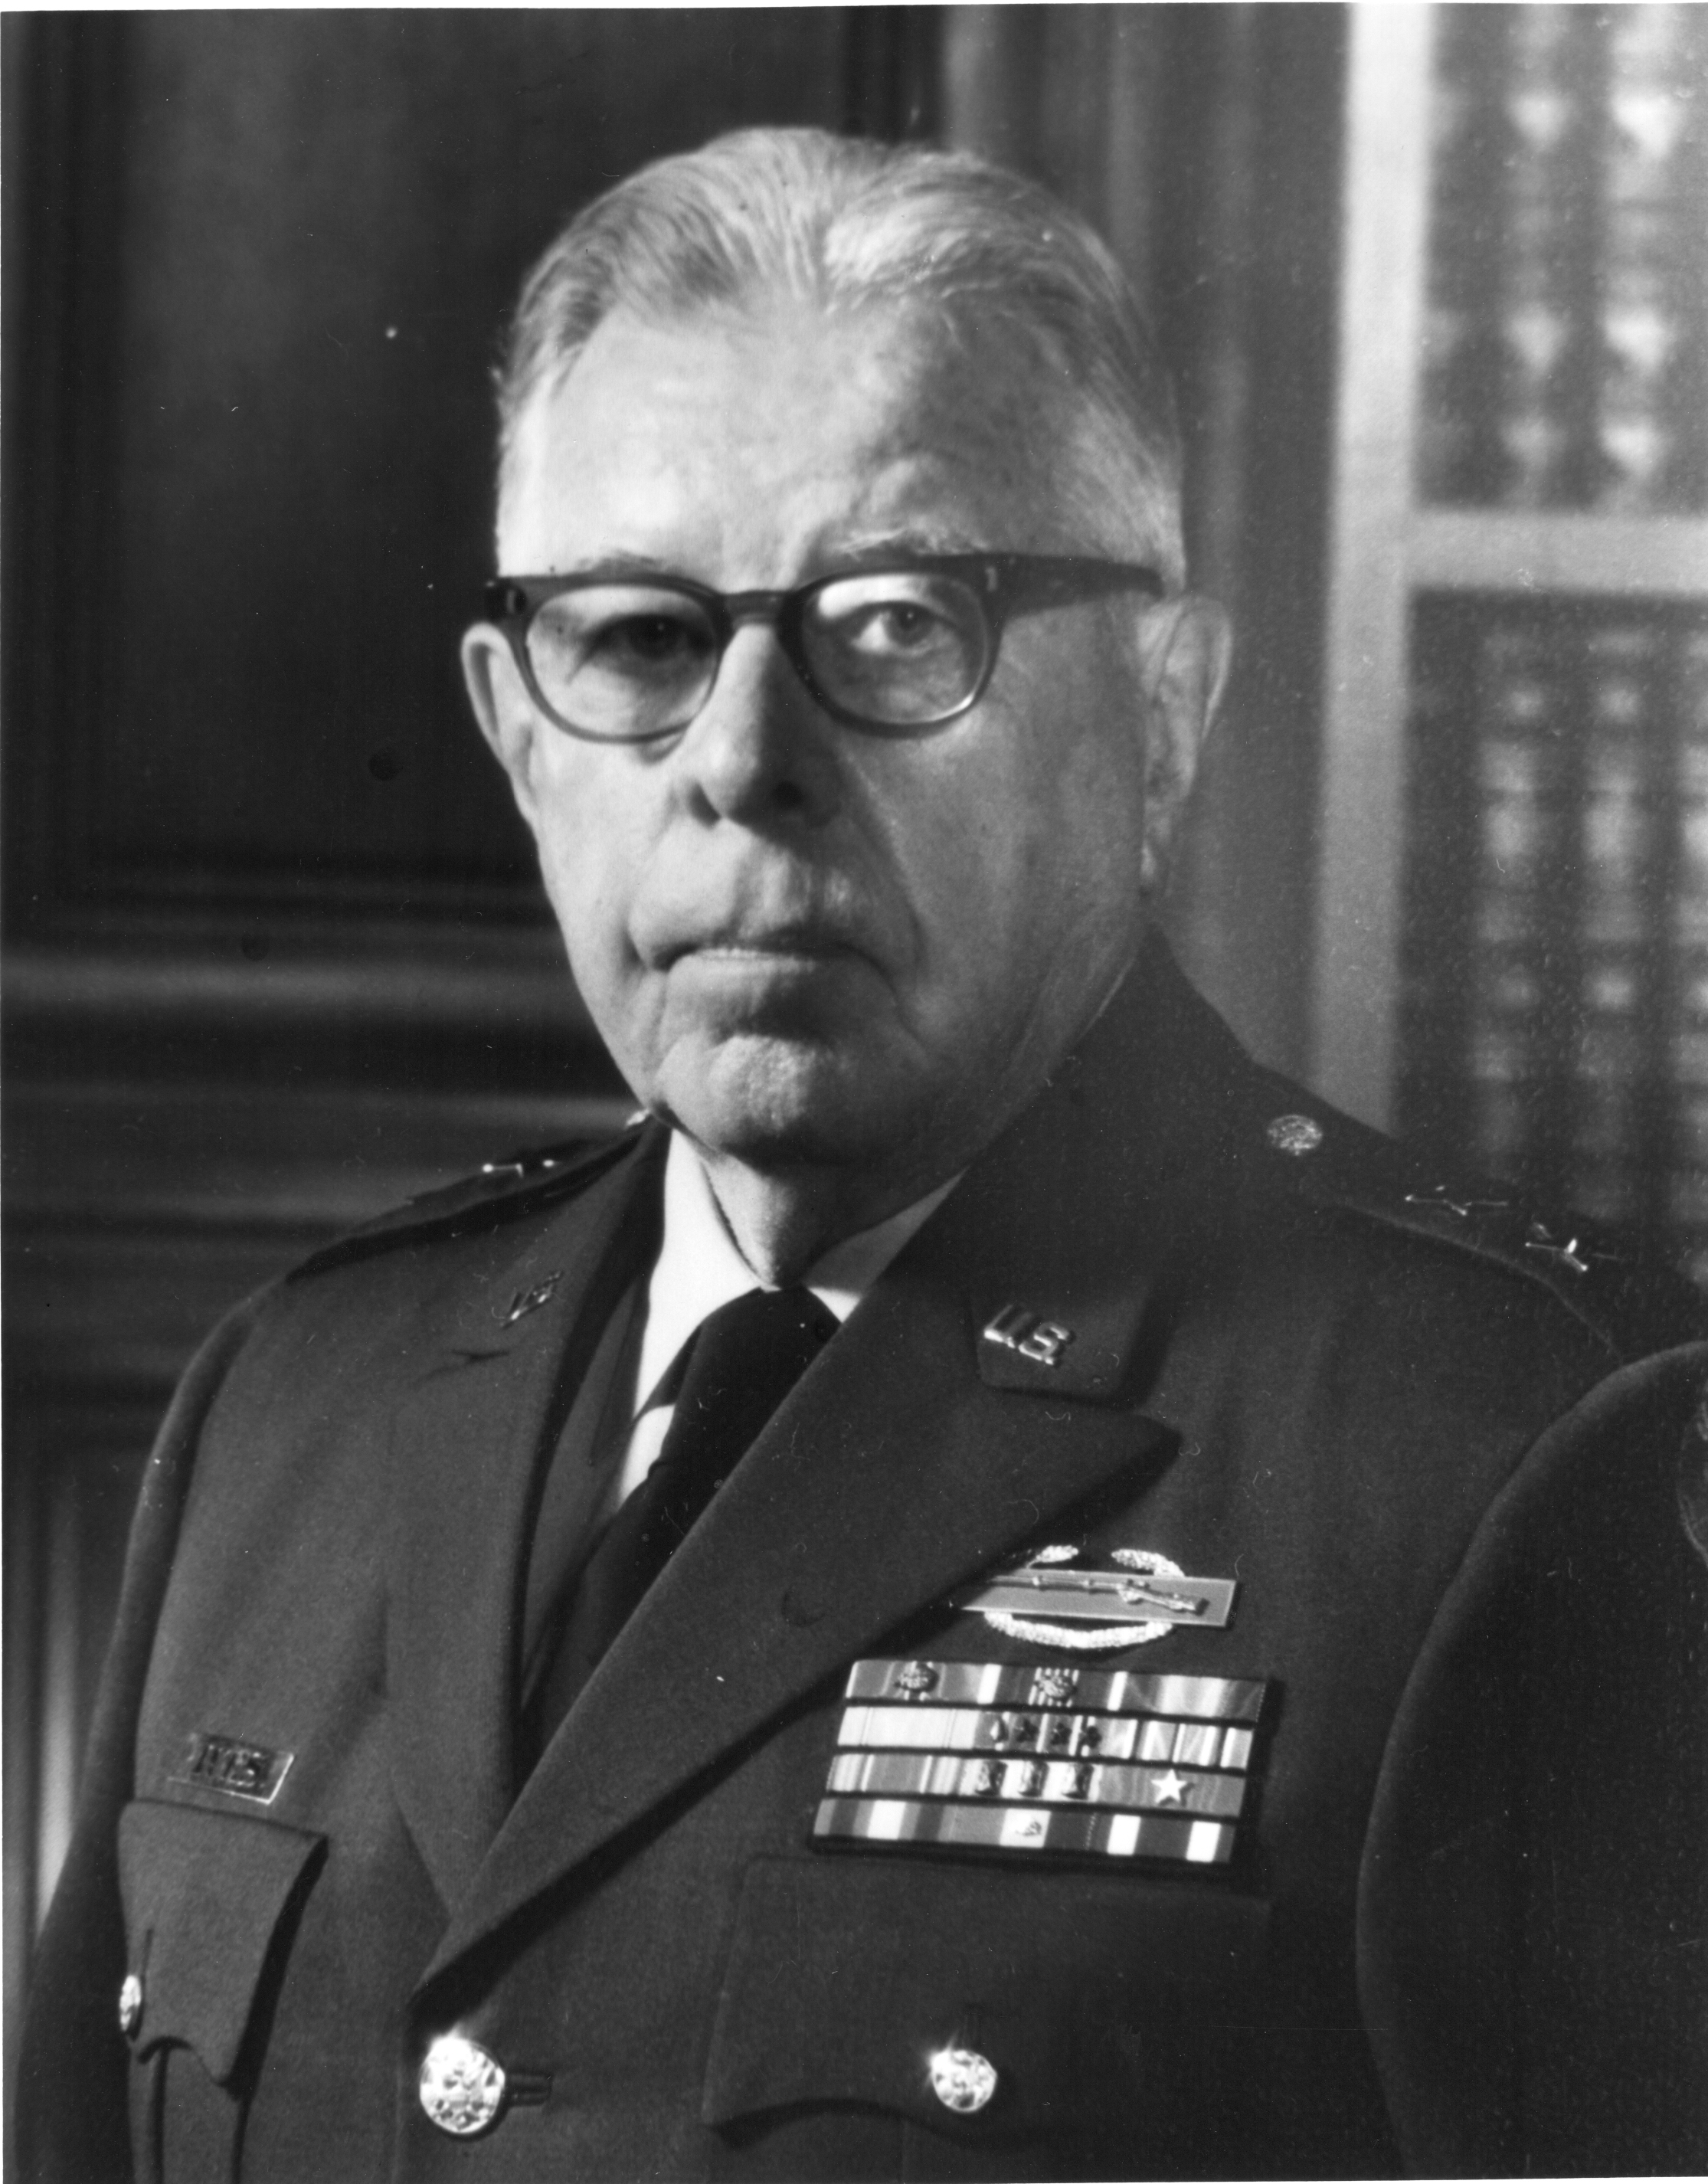 Major General Robert M. Ives